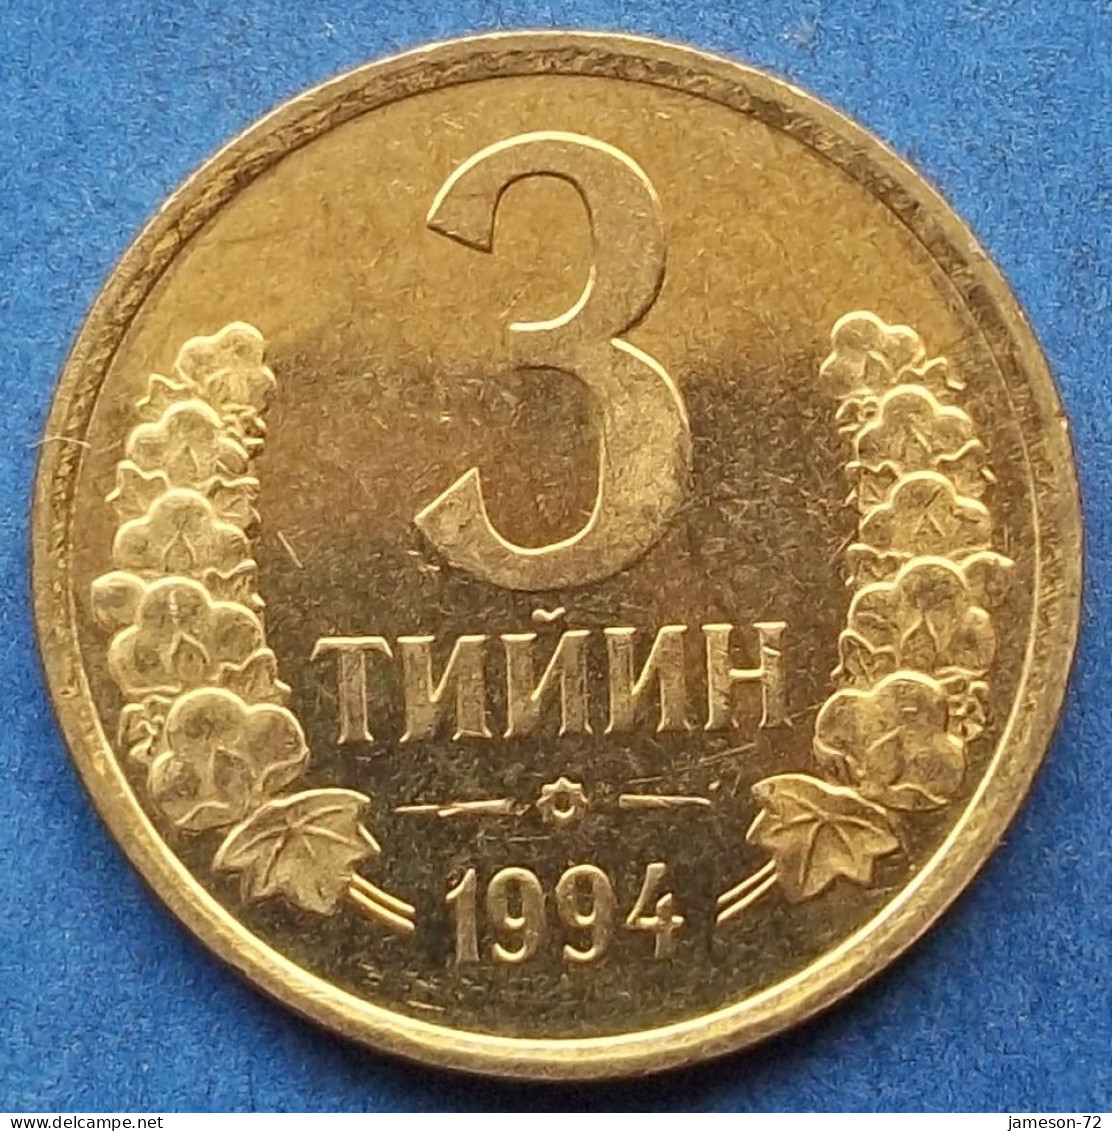 UZBEKISTAN - 3 Tiyin 1994 KM# 2 Independent Republic (1991) - Edelweiss Coins - Uzbekistan